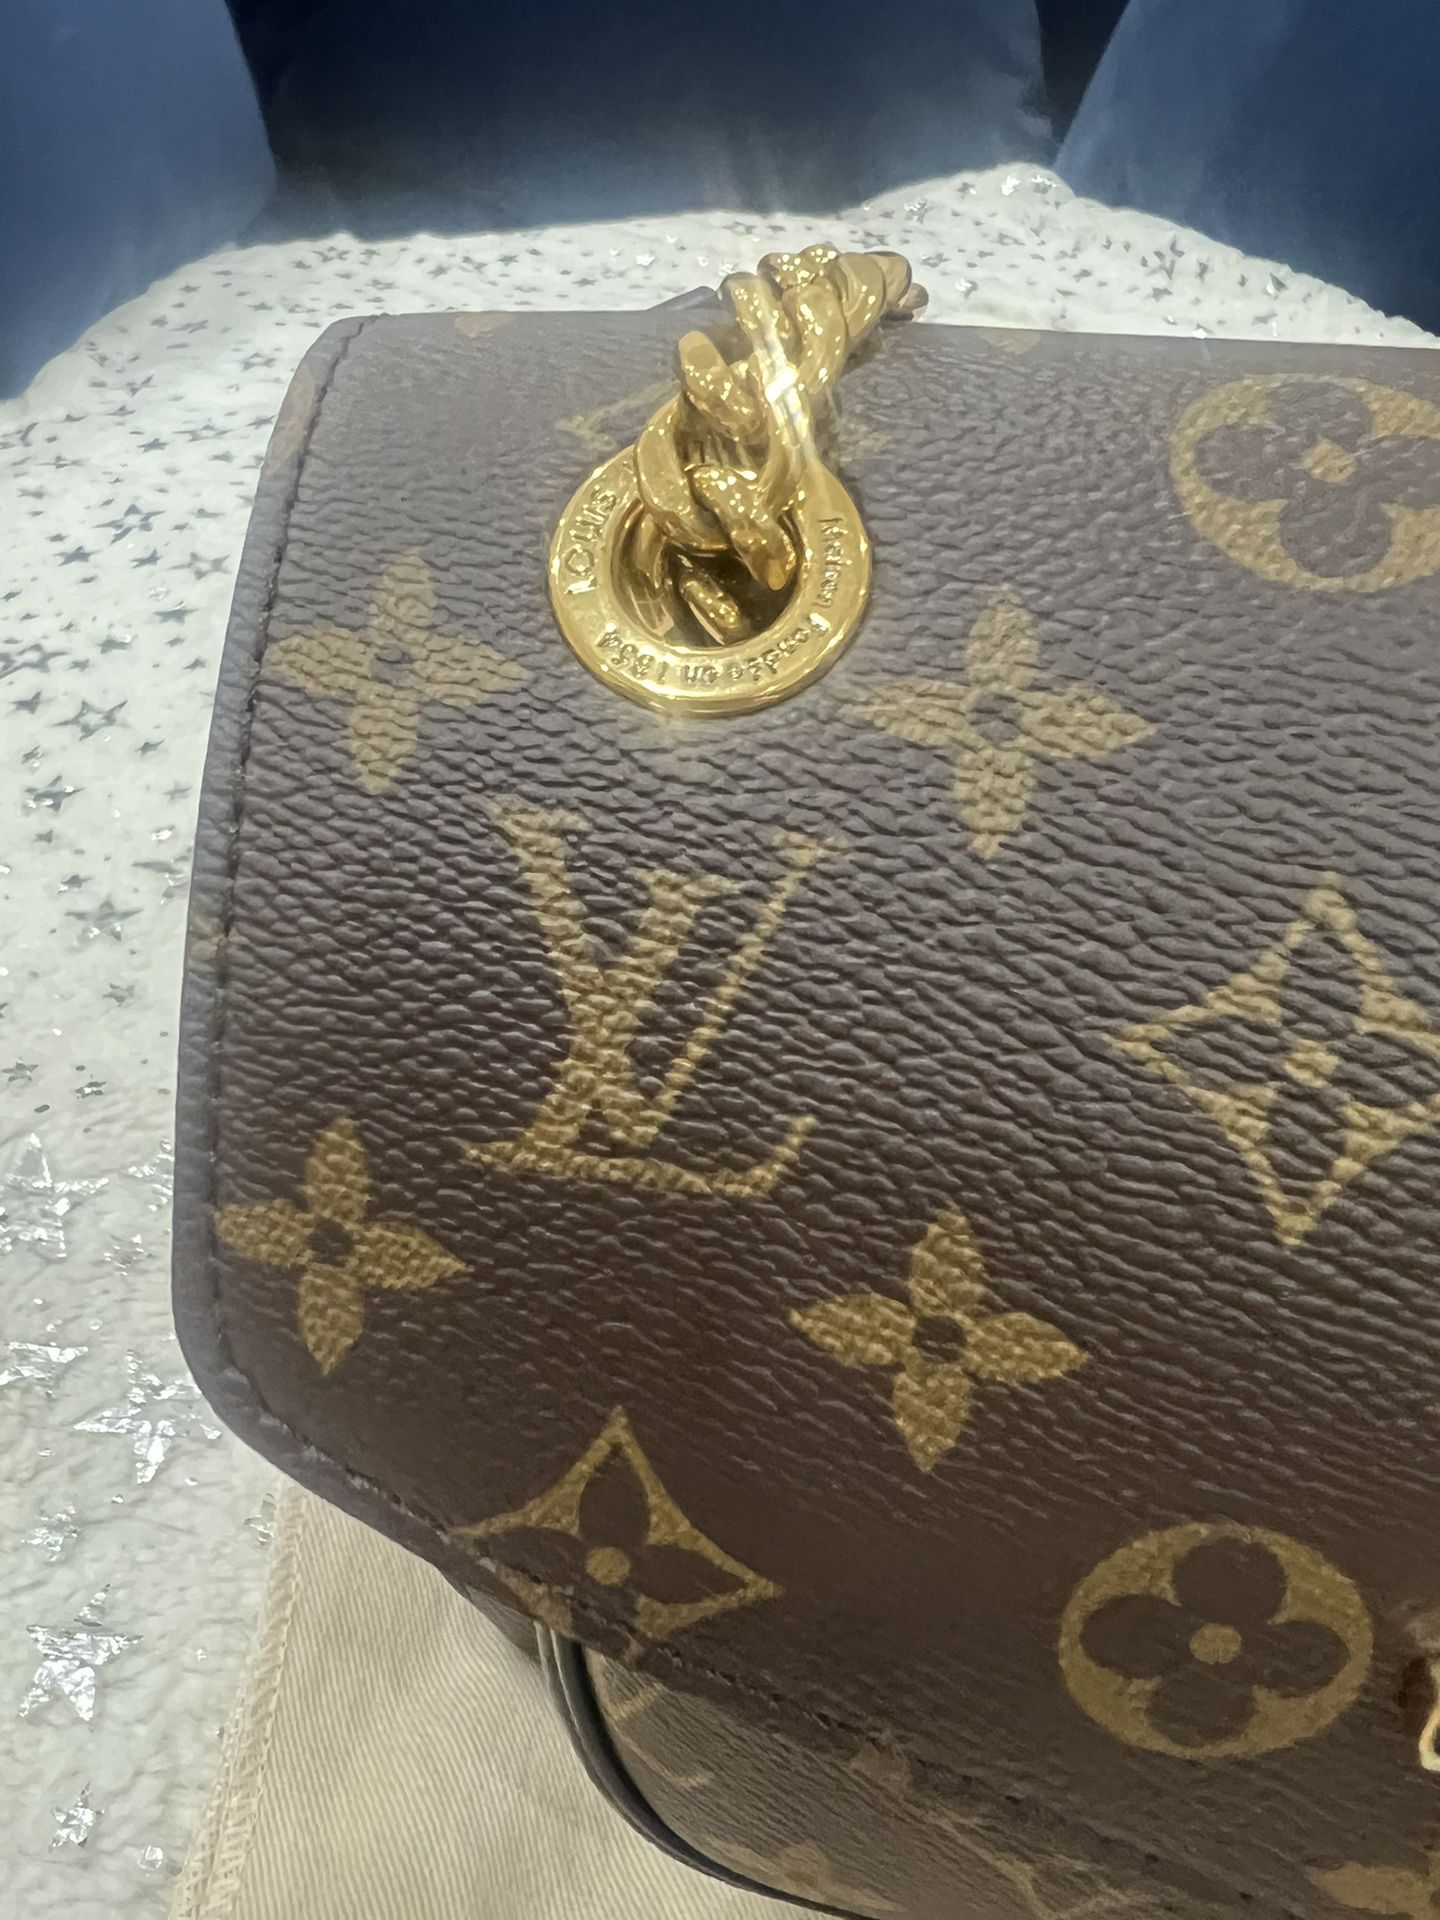 handbag pria lv for Sale,Up To OFF 66%